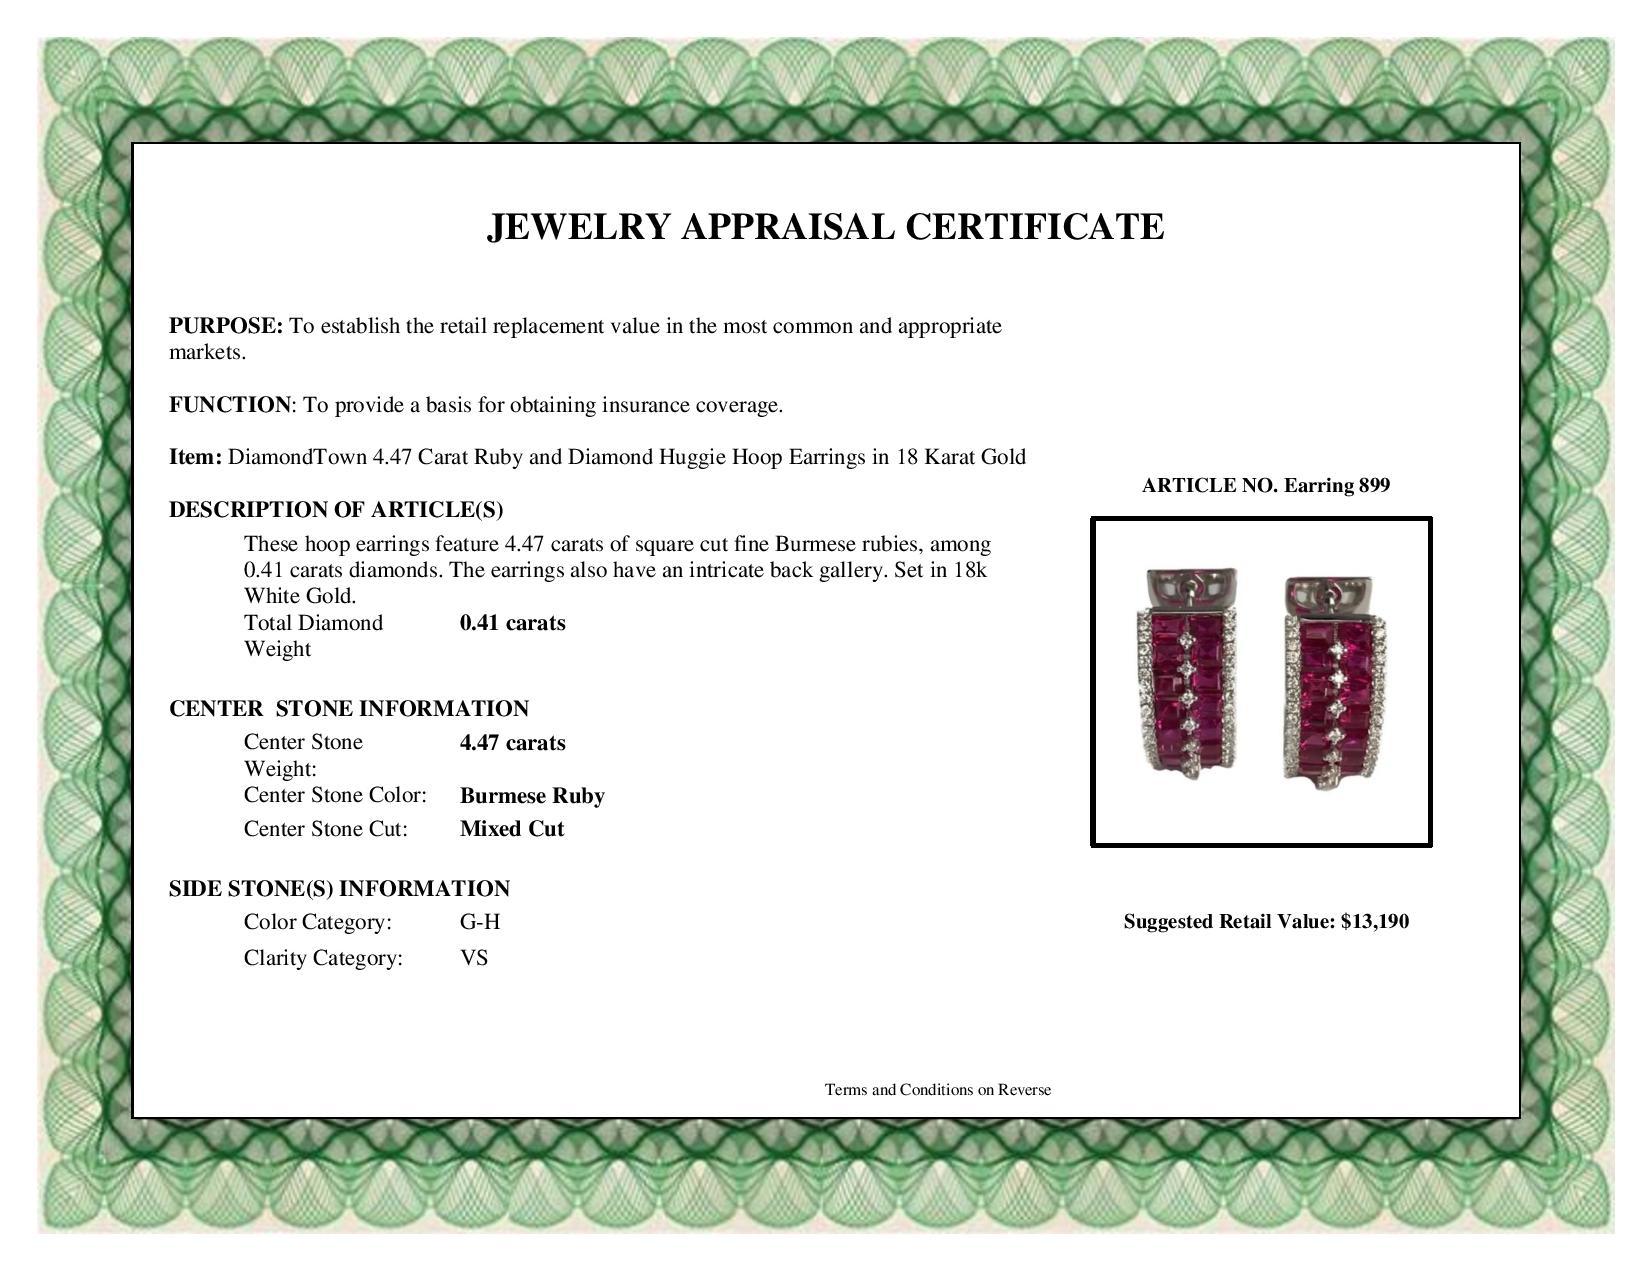 Diamond Town 4.47 Carat Ruby and Diamond Huggie Hoop Earrings in 18 Karat Gold 2